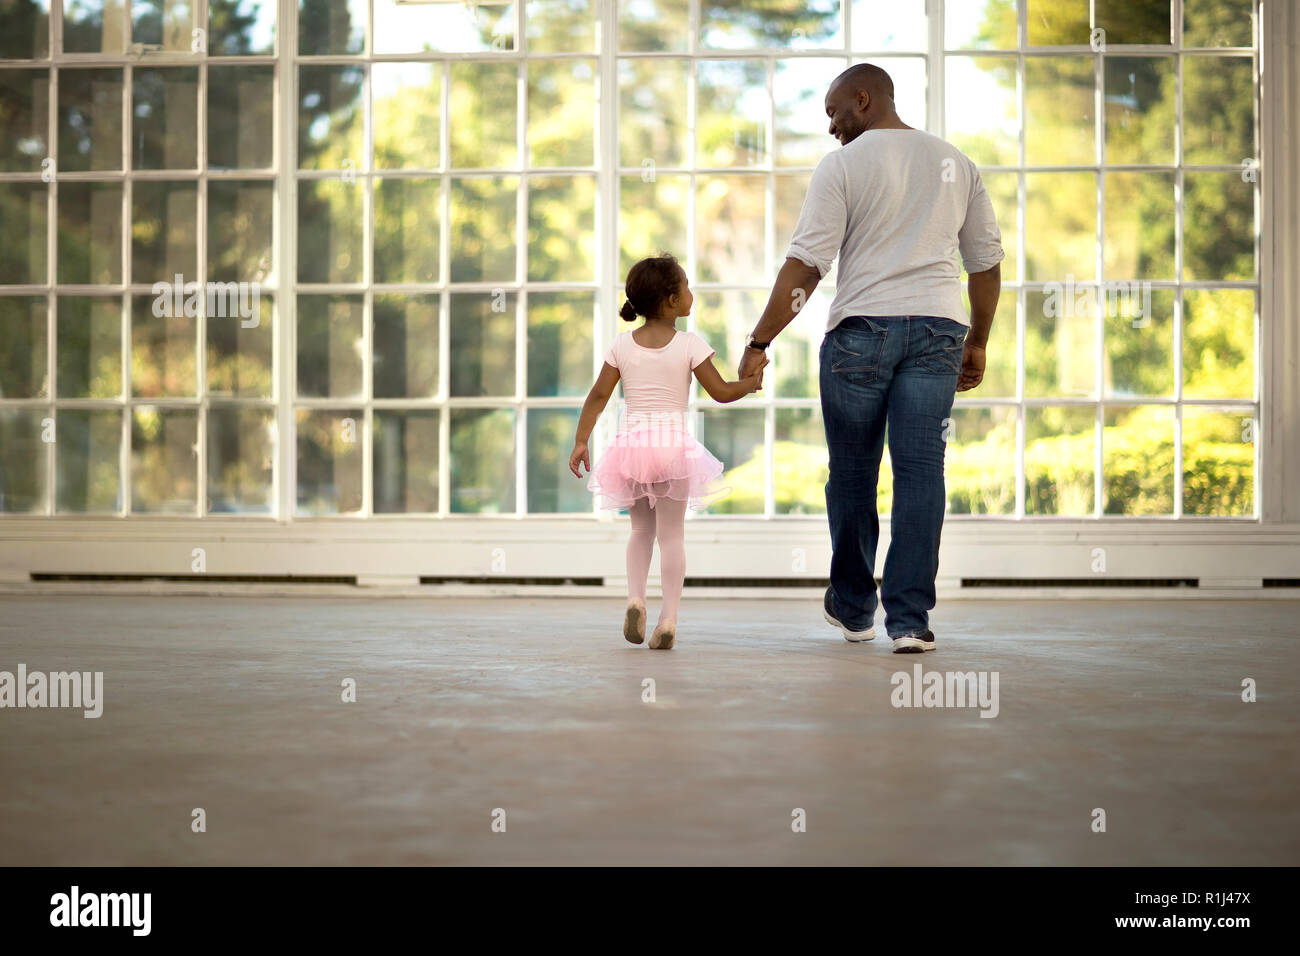 Mitad hombre adulto sosteniendo la mano de su hija. Foto de stock